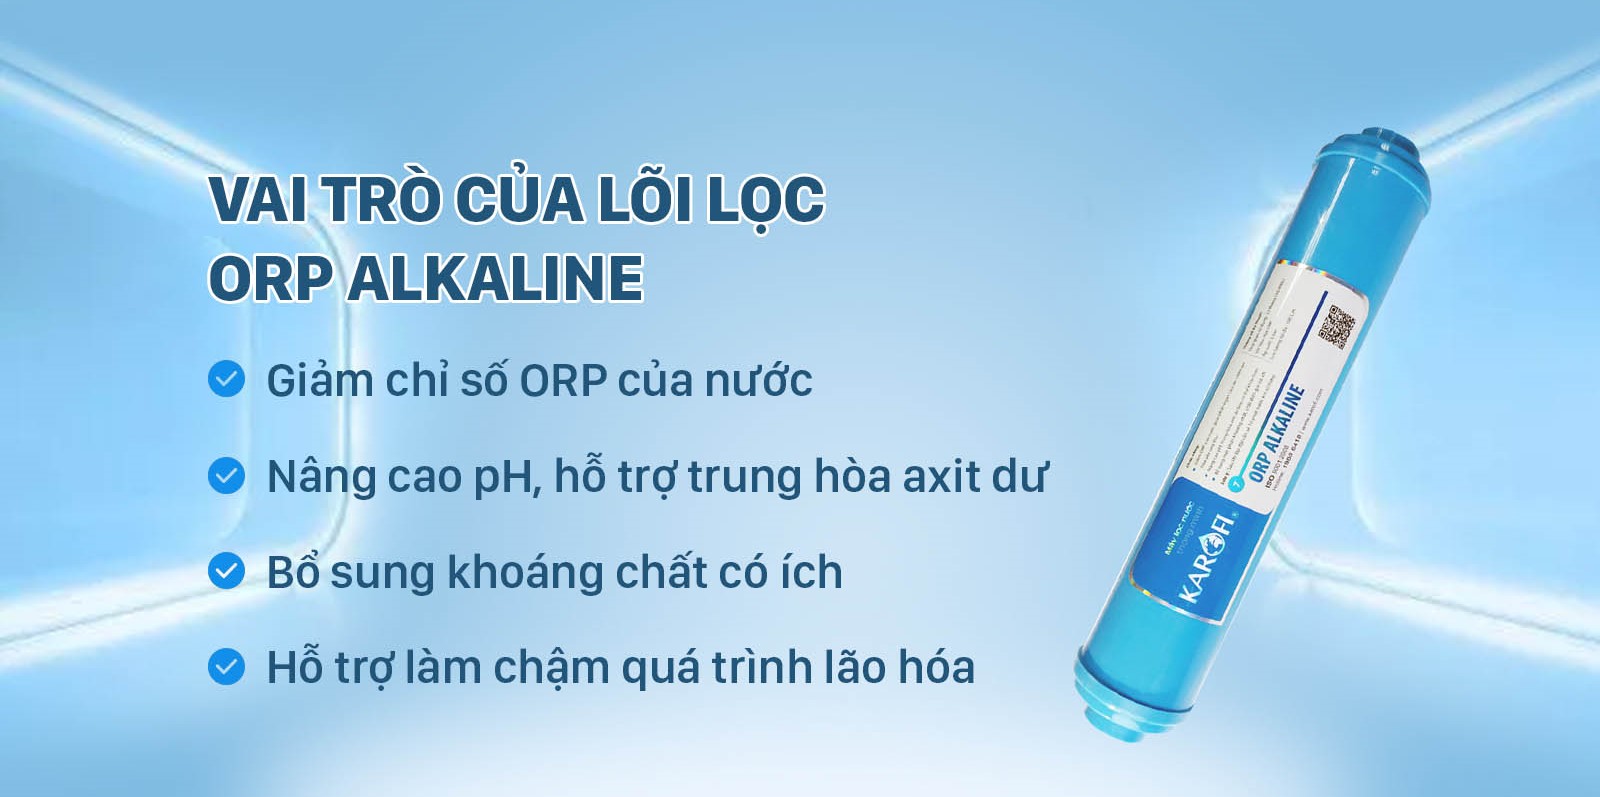 Lõi lọc ORP Alkaline mang đến nhiều lợi ích cho sức khỏe con người